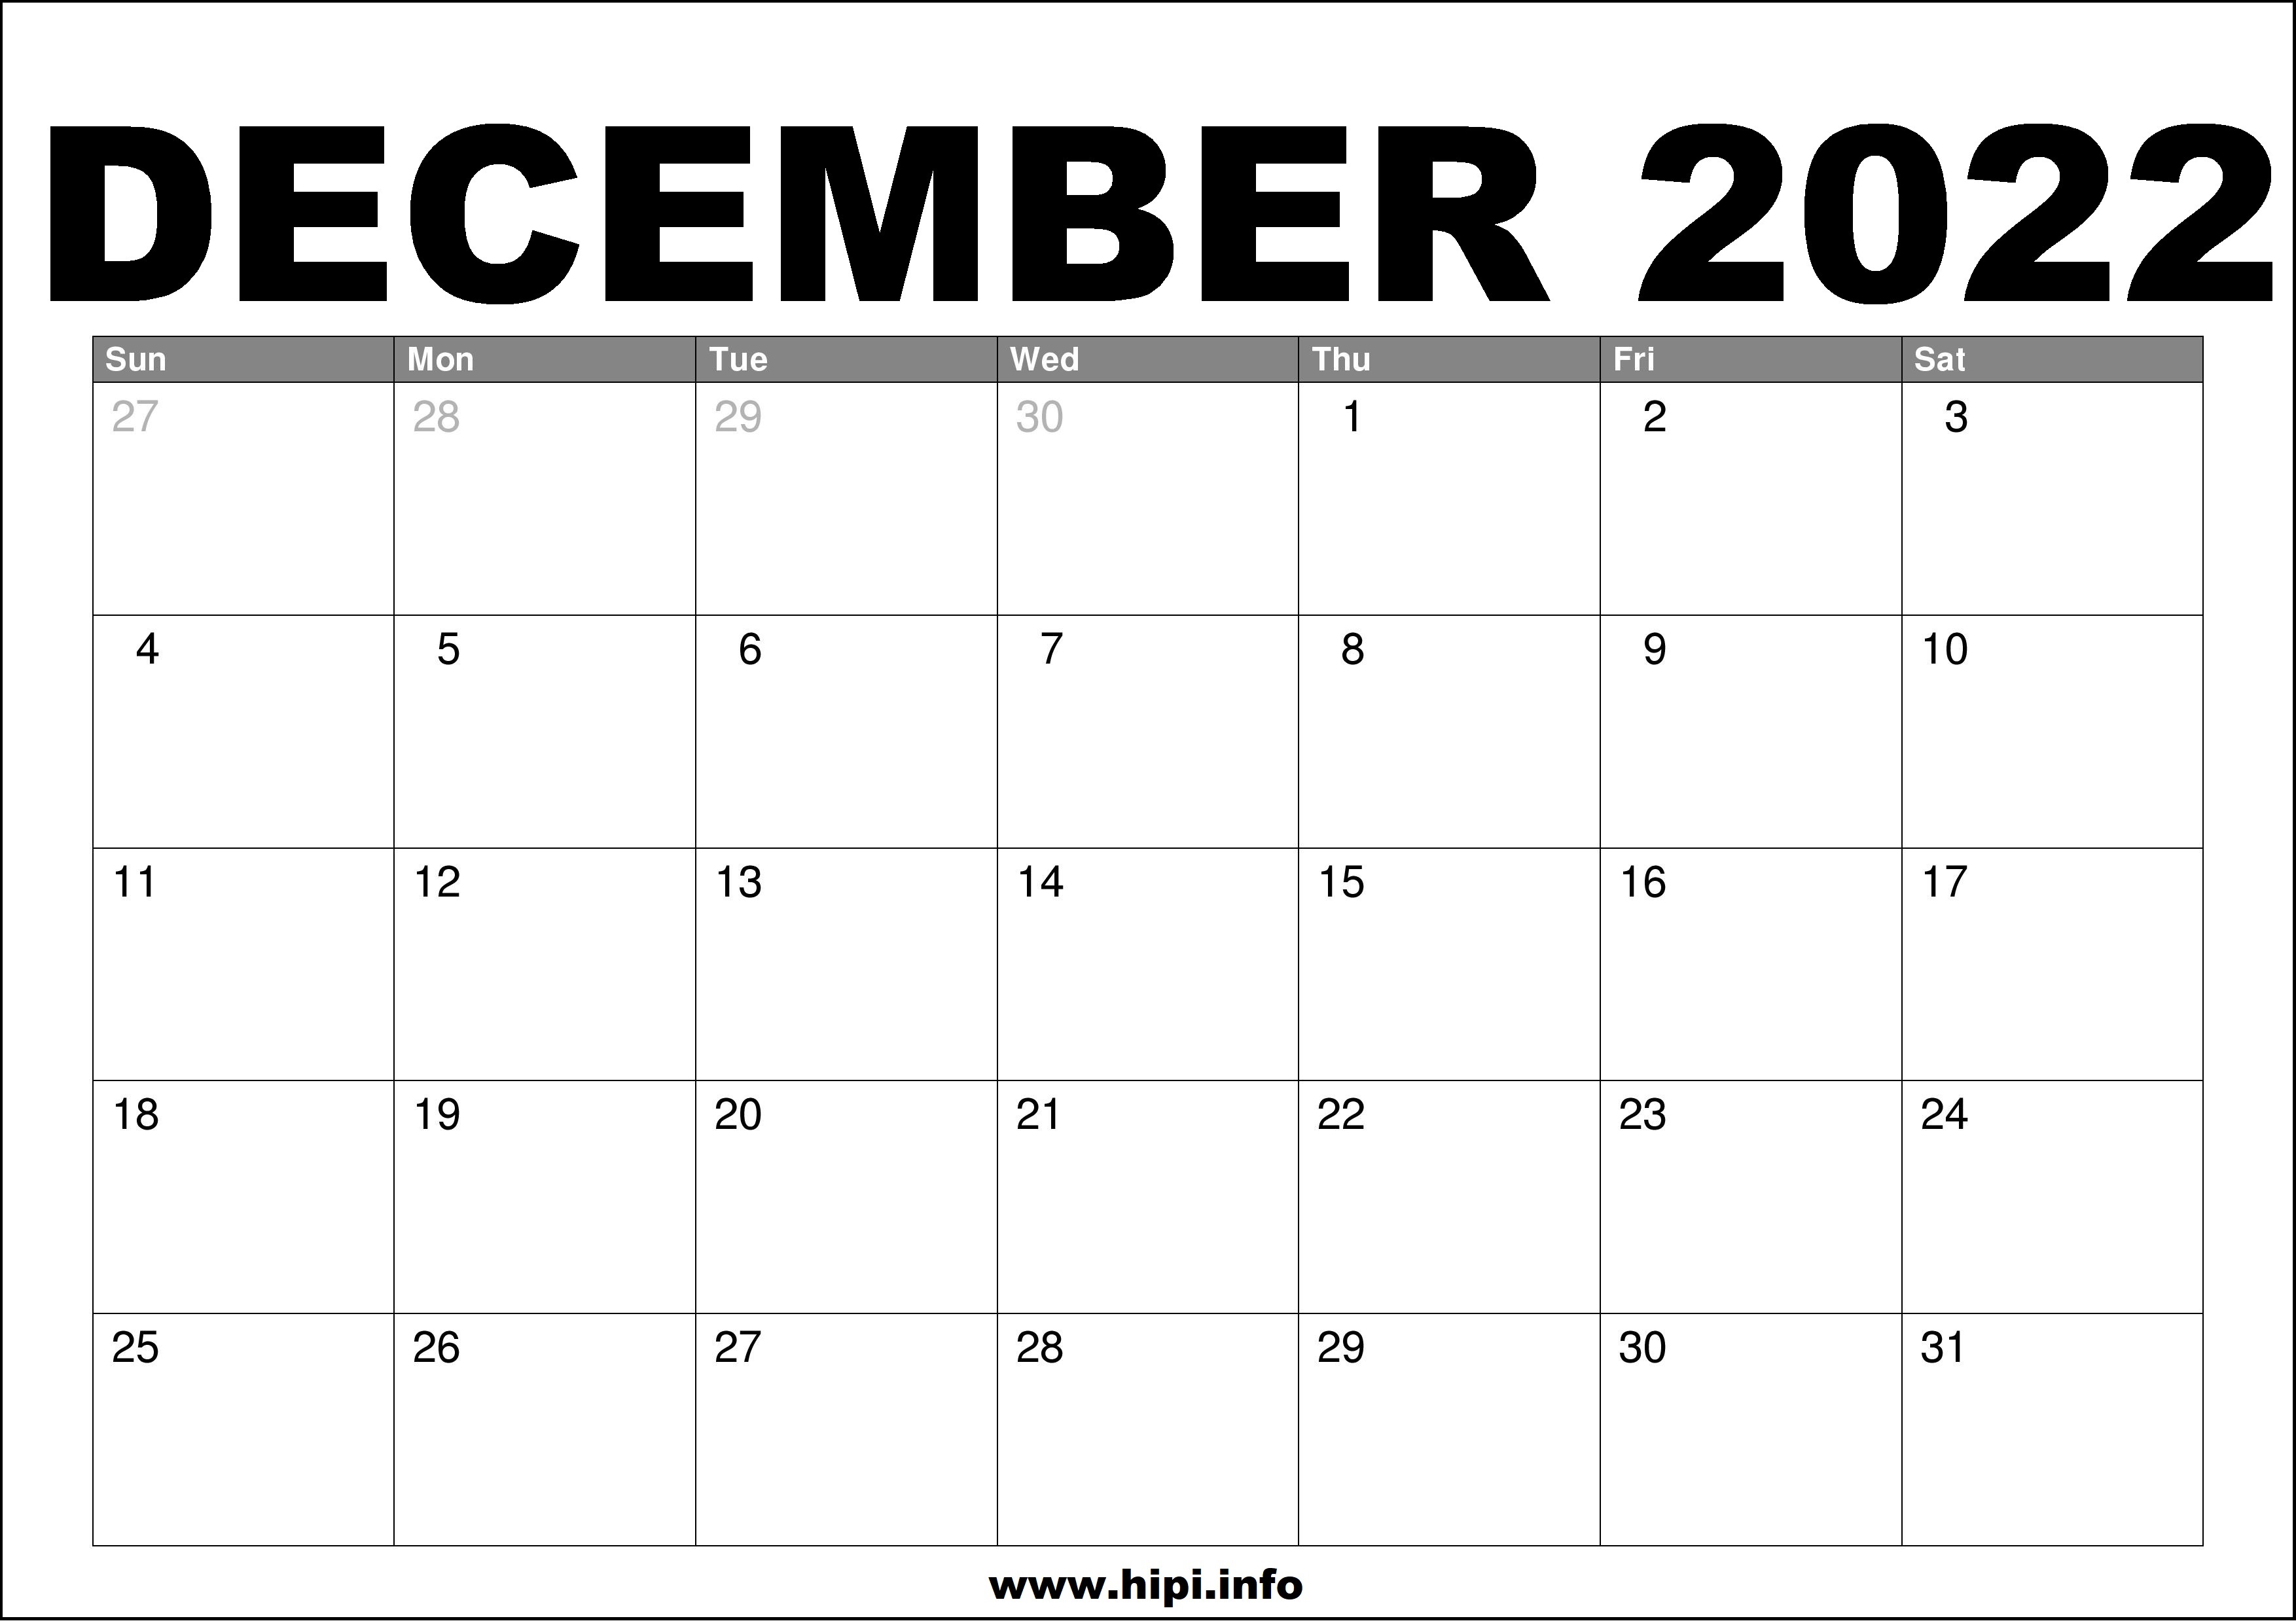 December 2022 Calendar Template December 2022 Calendar Printable Free - Hipi.info | Calendars Printable Free